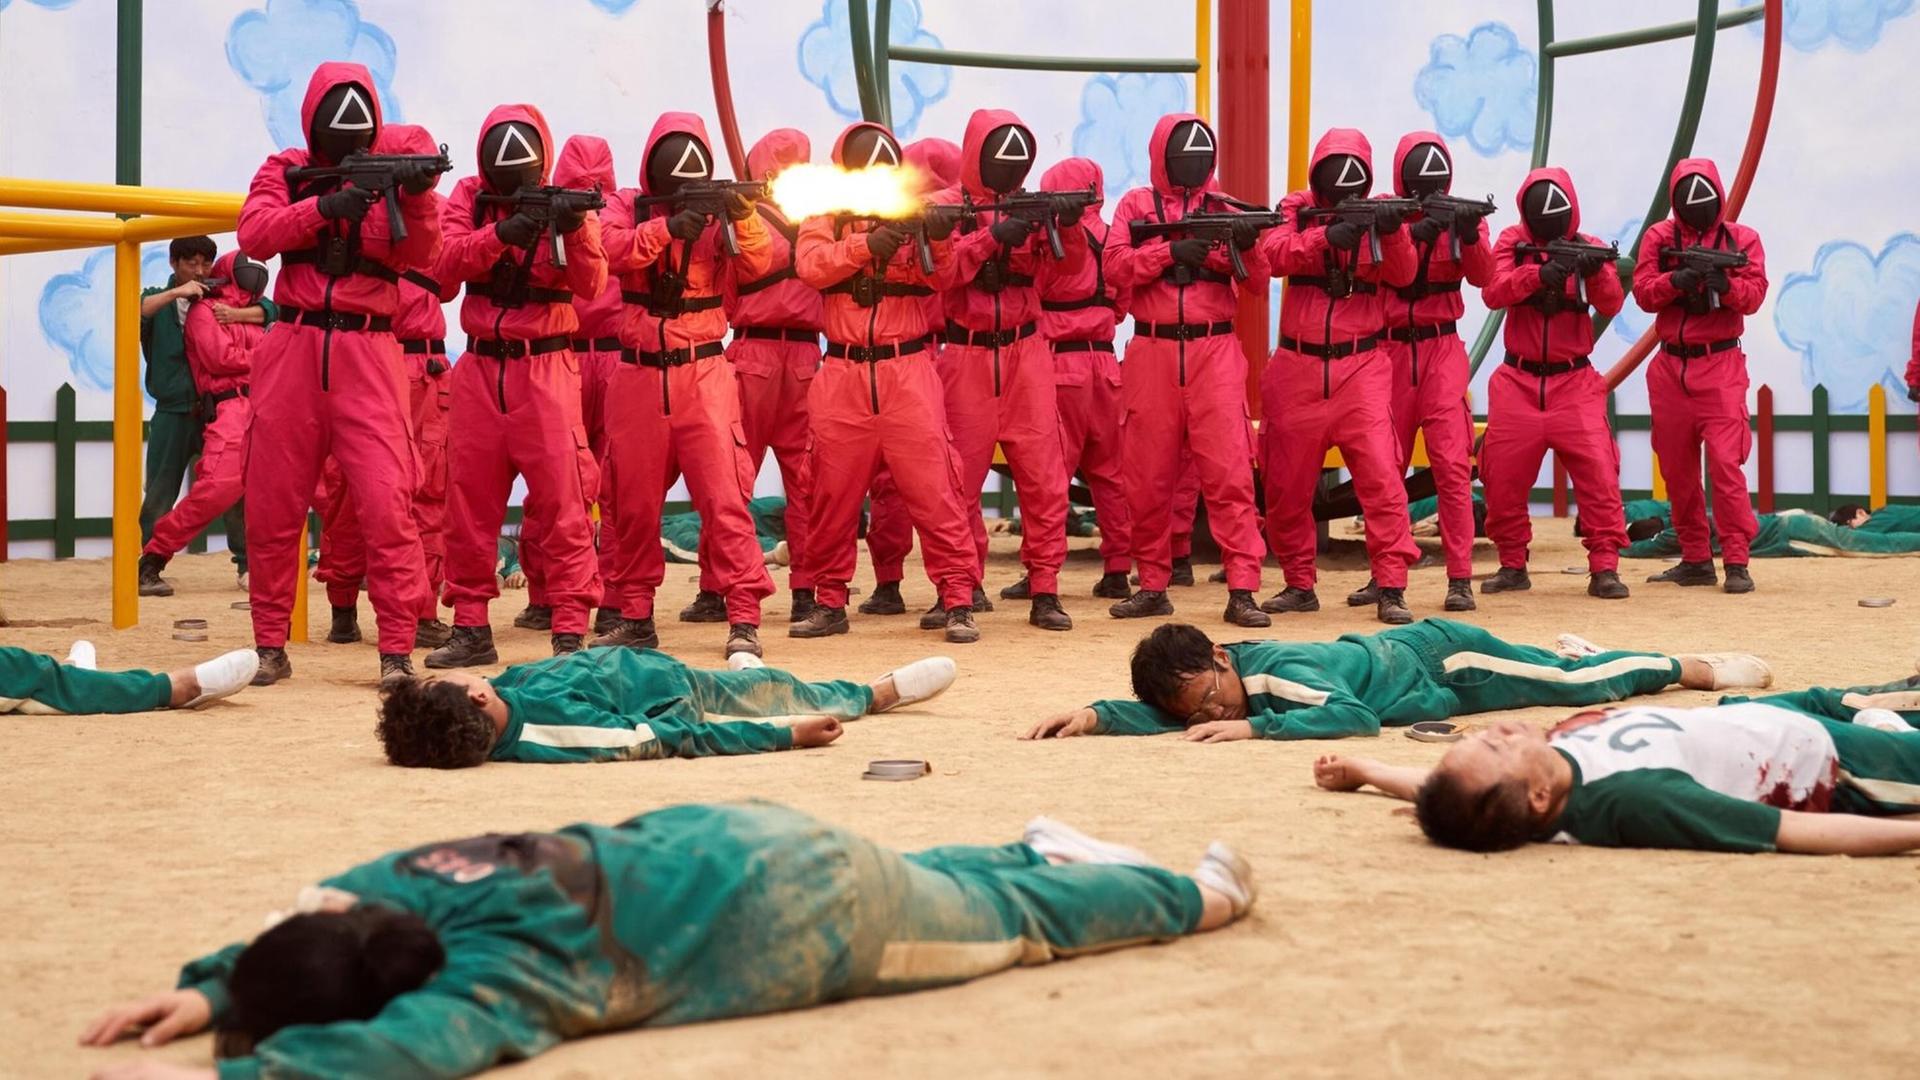 Eine Szenenfoto aus einem Film: Männer in roten Uniformen tragen Maske und Gewehre. Vor ihnen liegen Menschen in grünen Overalls im Sand.